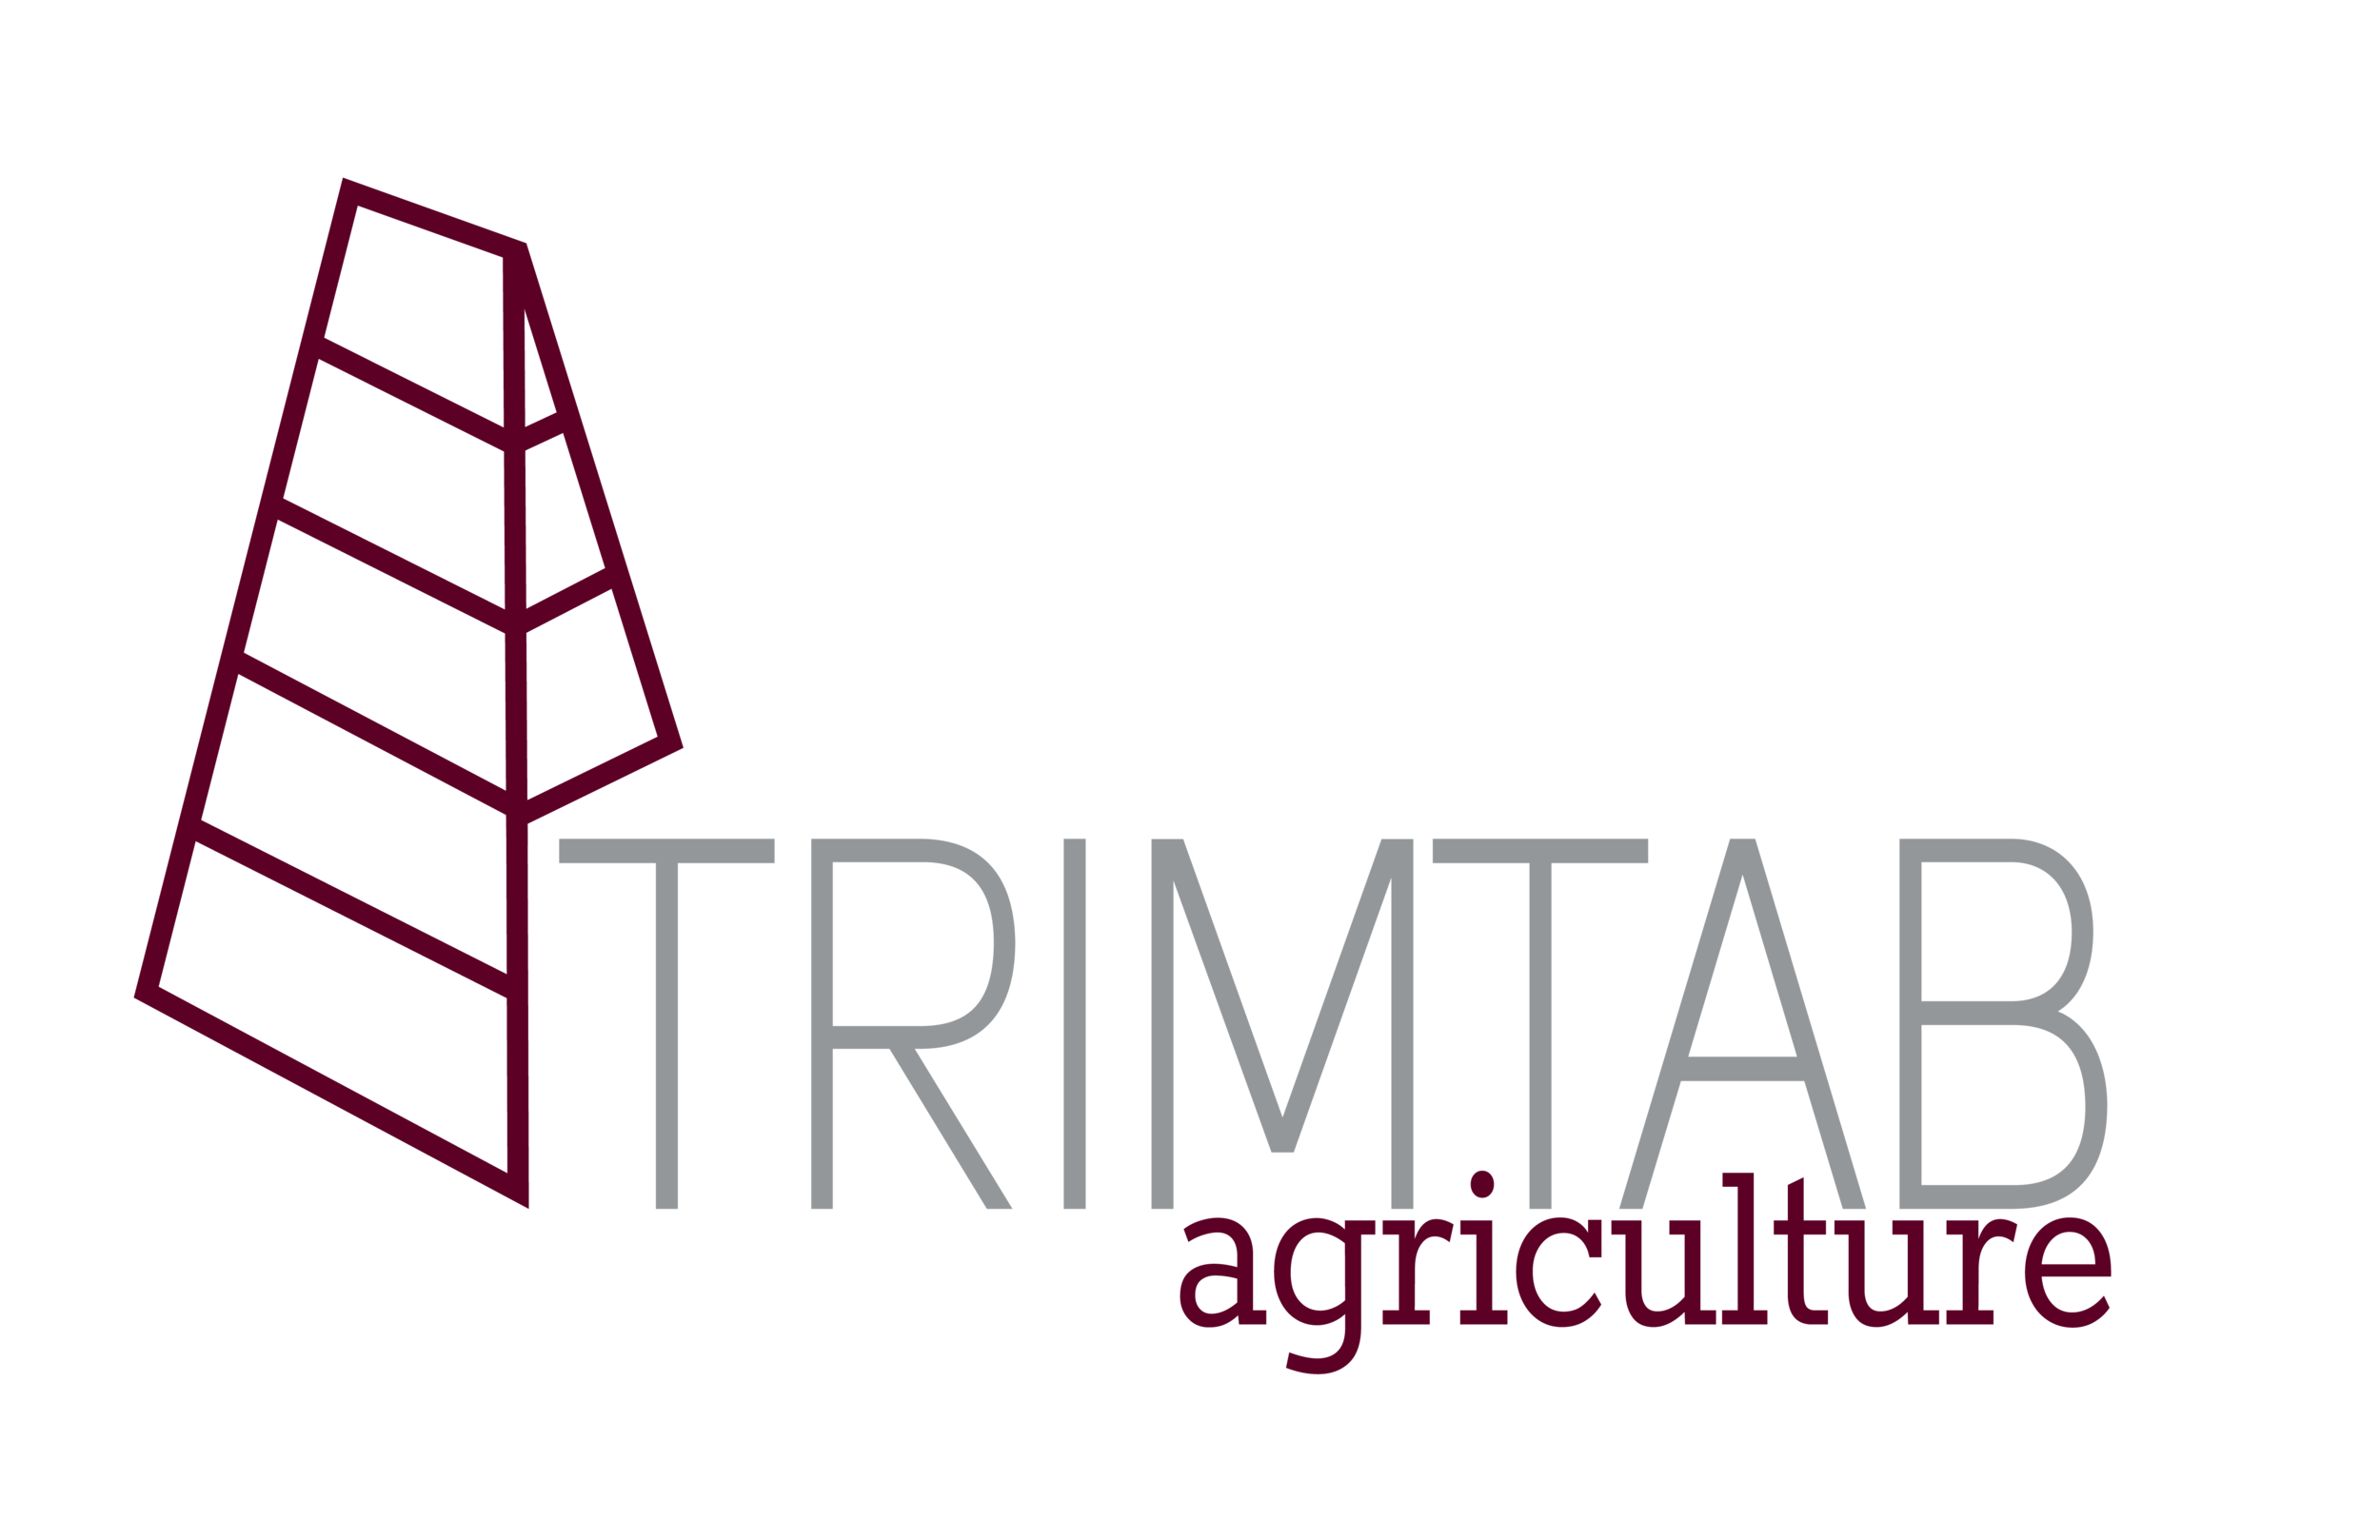 TrimTab Agriculture